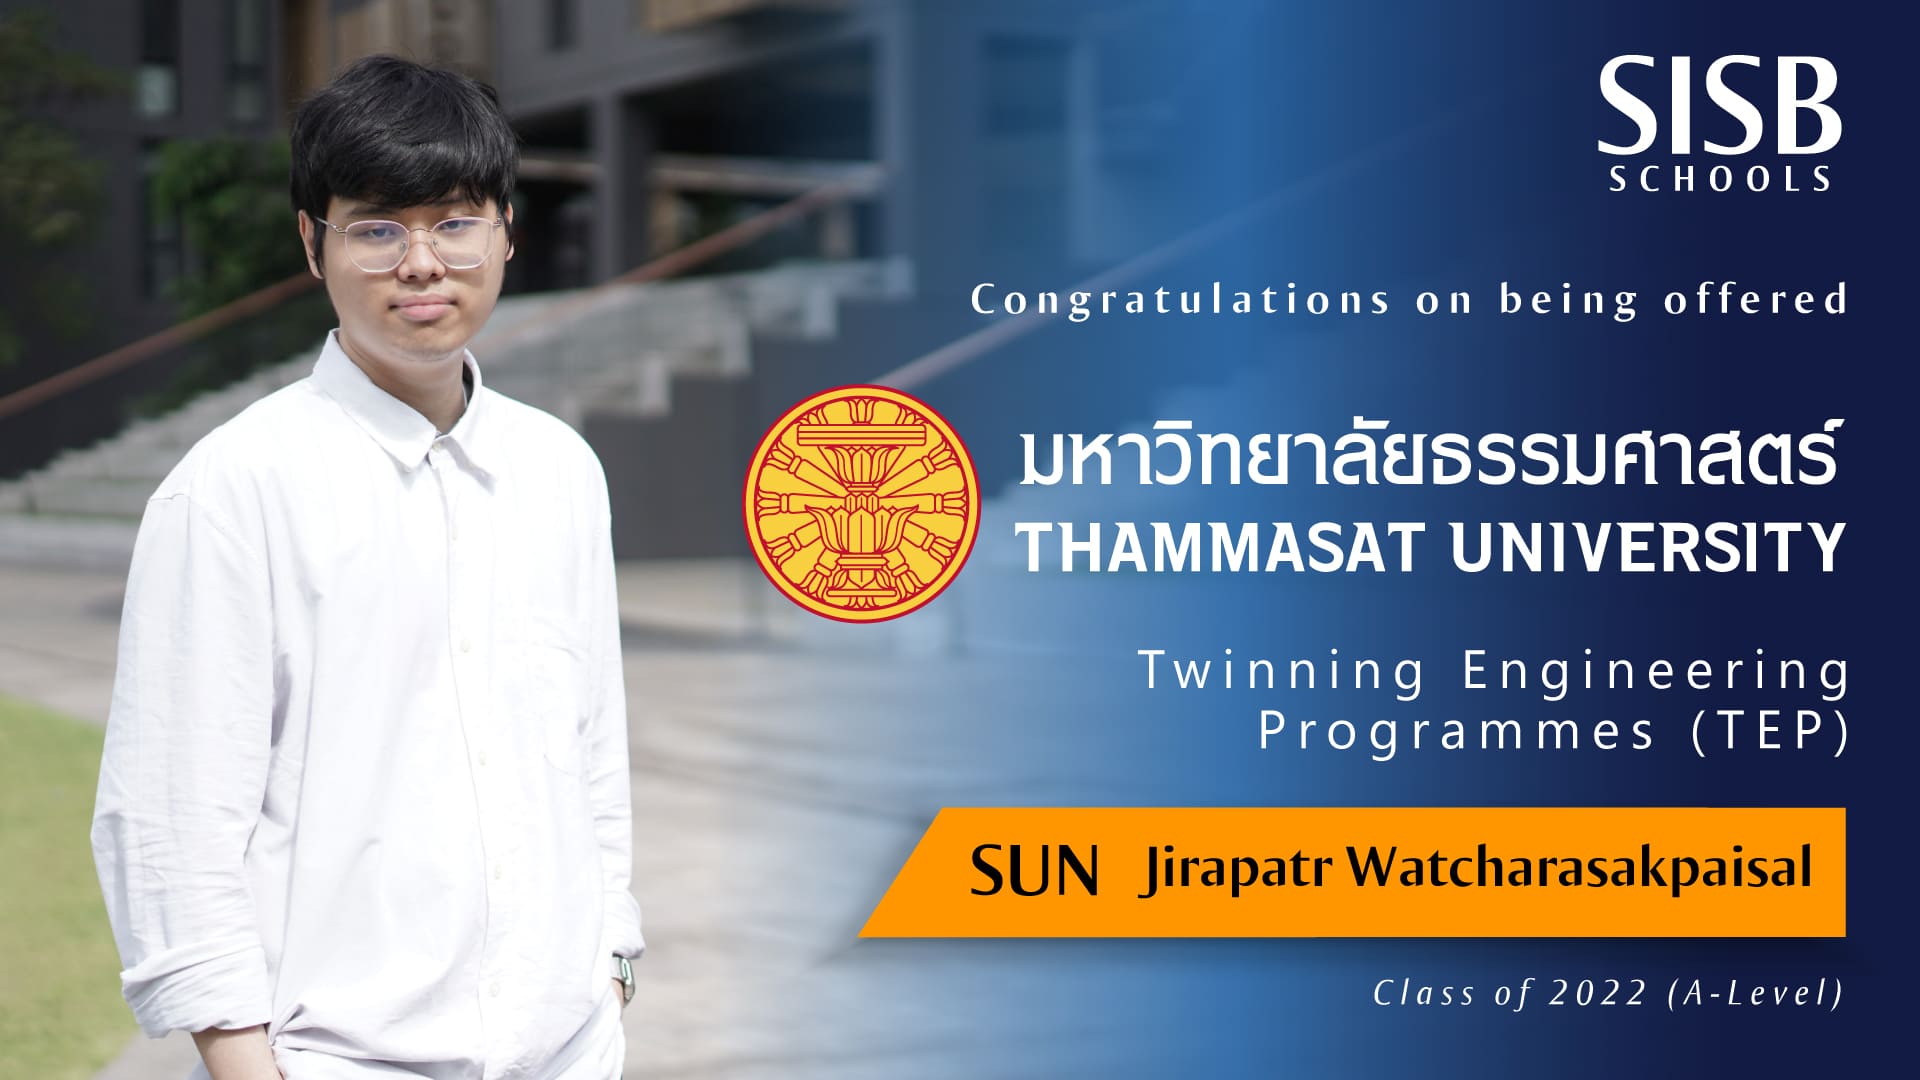 1 - -Sun - -Thammasat